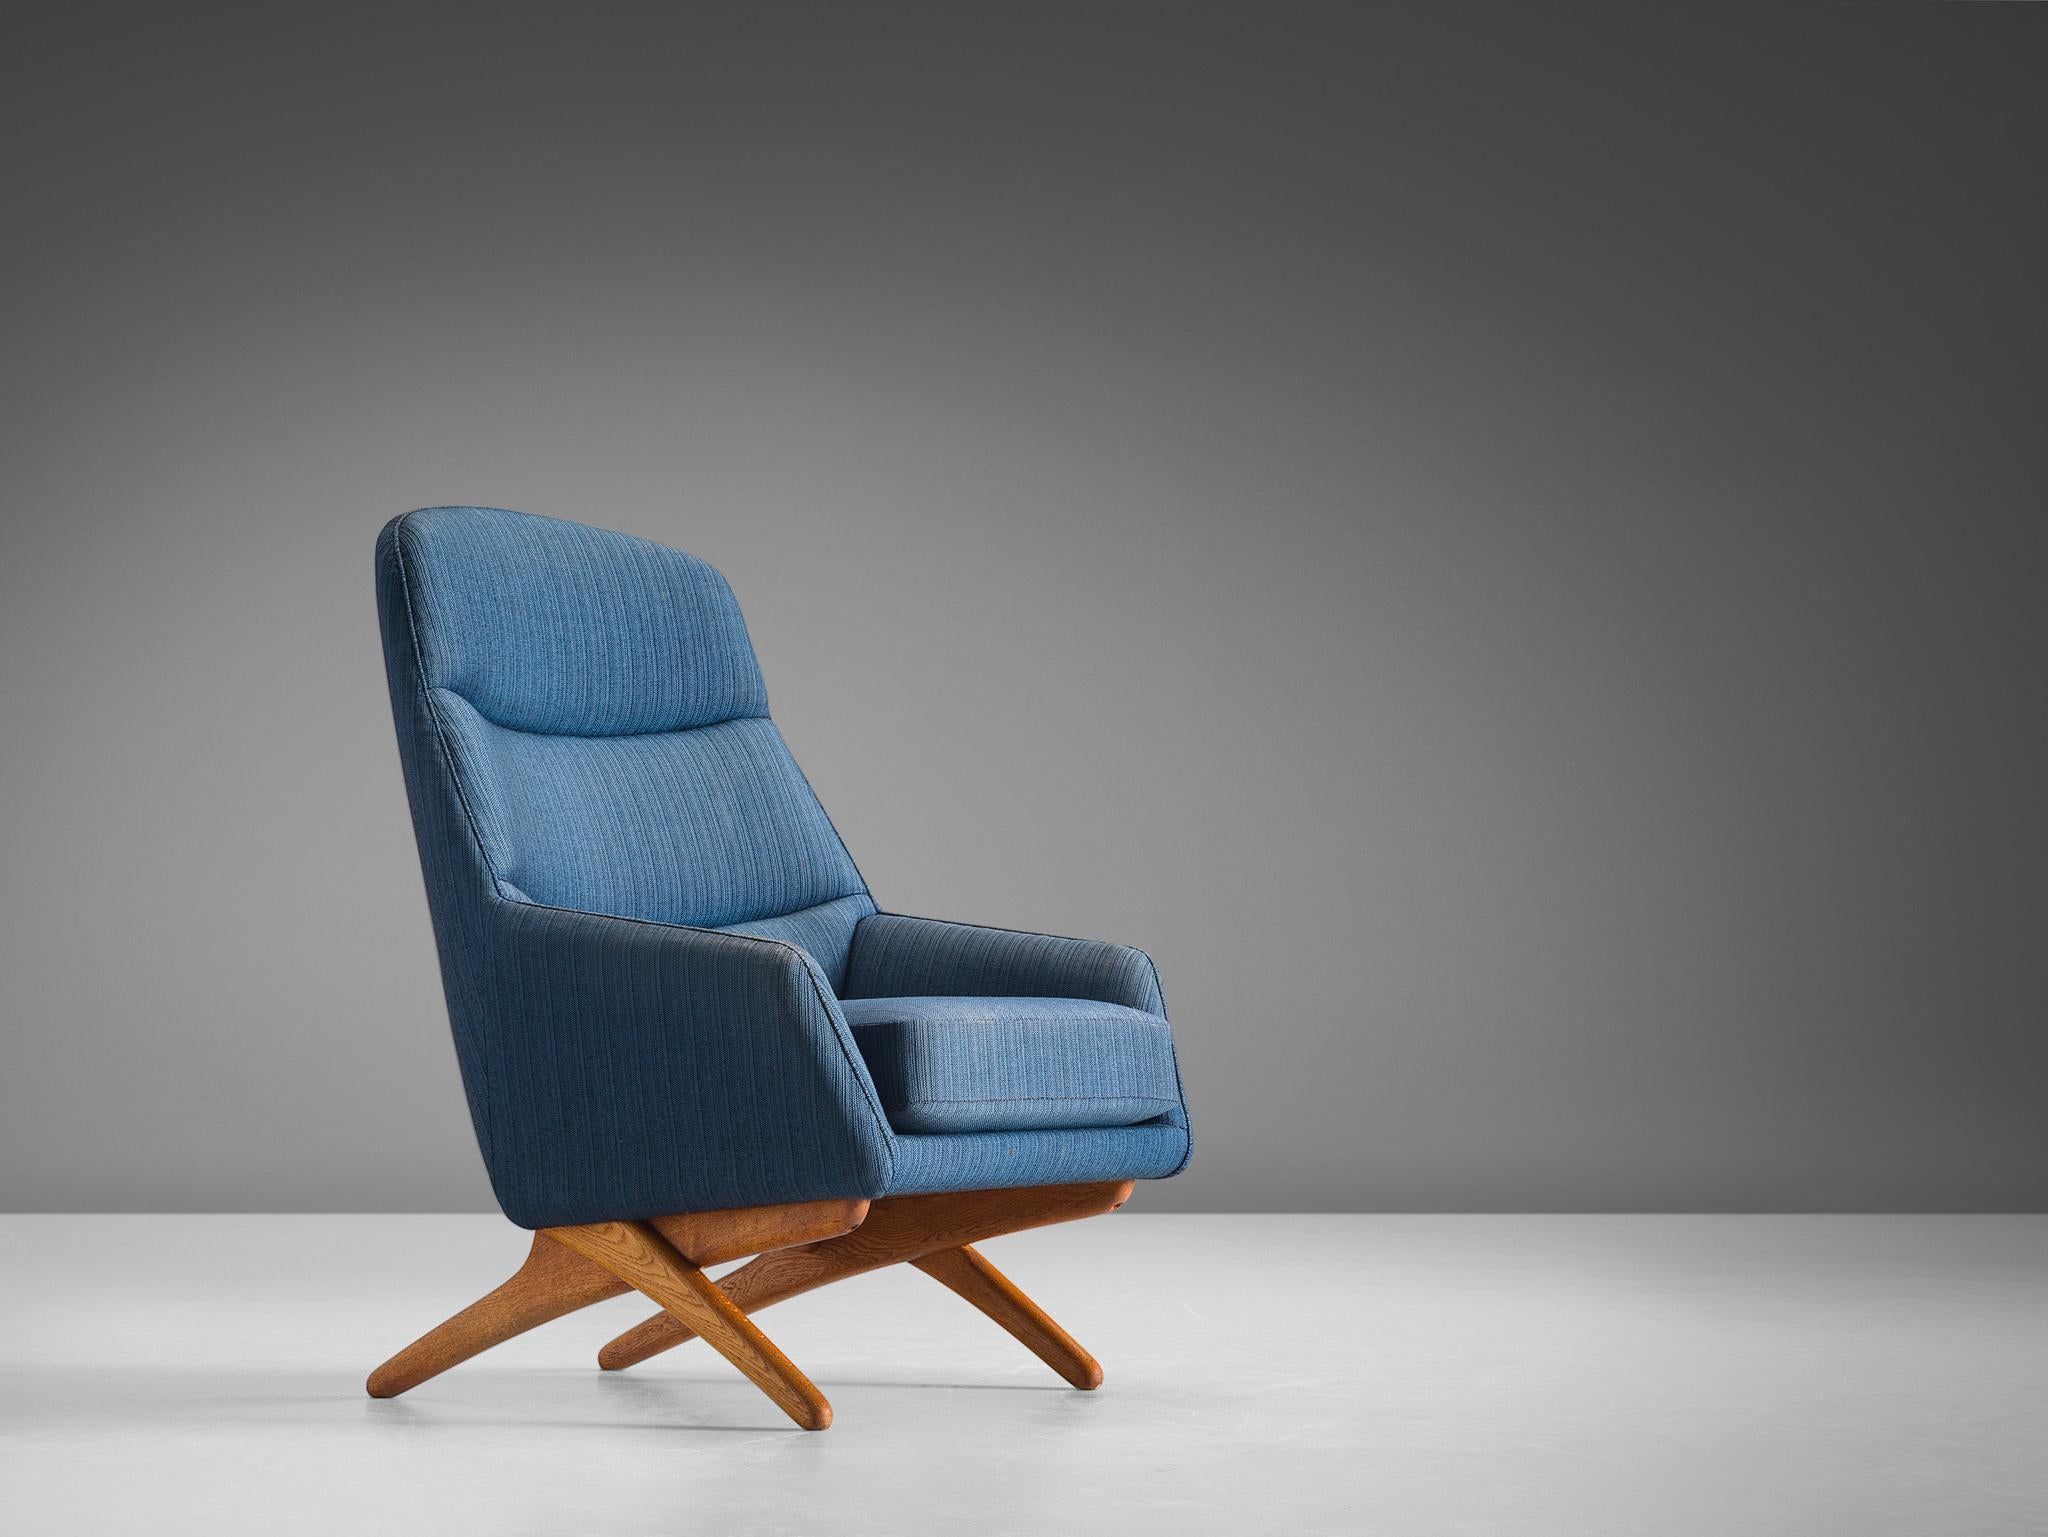 Illum Wikkelsø, Sessel aus blauem Stoff und Eiche, Dänemark, 1960er Jahre.

Dieser Sessel wurde in den 1960er Jahren von Illum Wikkelsø entworfen und von Mikael Laursen in Dänemark hergestellt. Dieses Lounge-Set ist bequem und zeigt verspielte